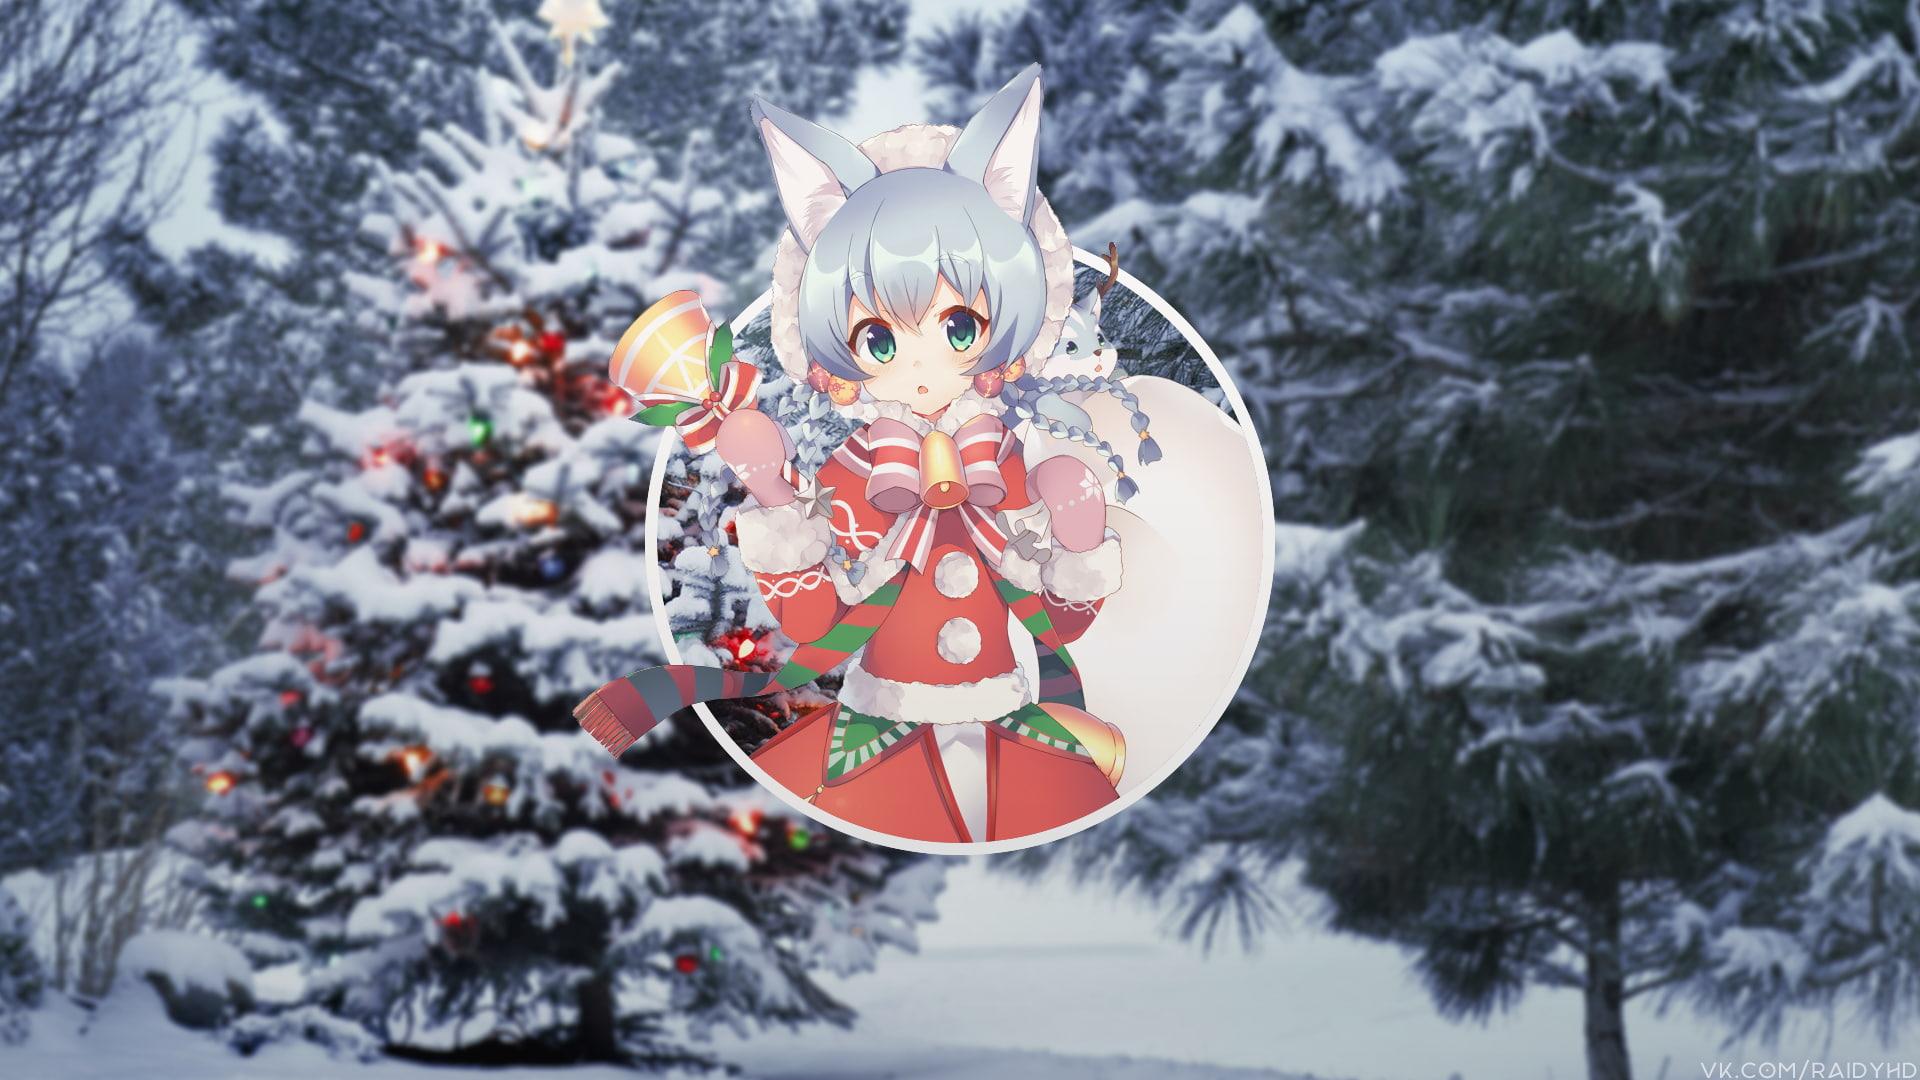 HD wallpaper: Anime, Christmas